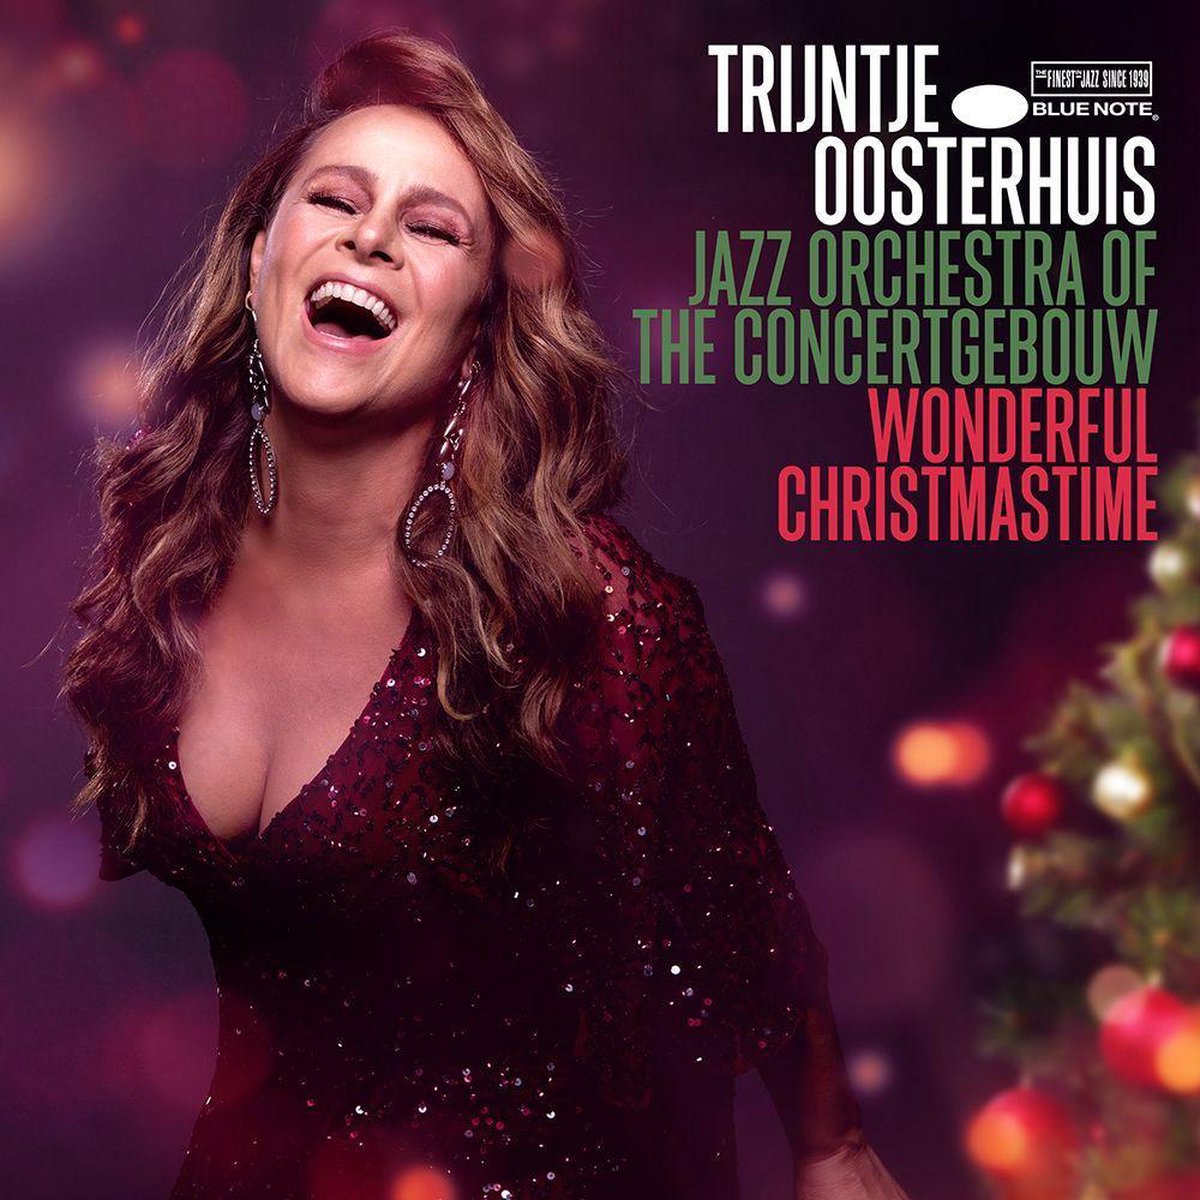 Trijntje Oosterhuis & Jazz Orchestra of The Concertgebouw - Wonderful Christmastime (CD) - Trijntje Oosterhuis & Jazz Orchestra of The Concertgebouw